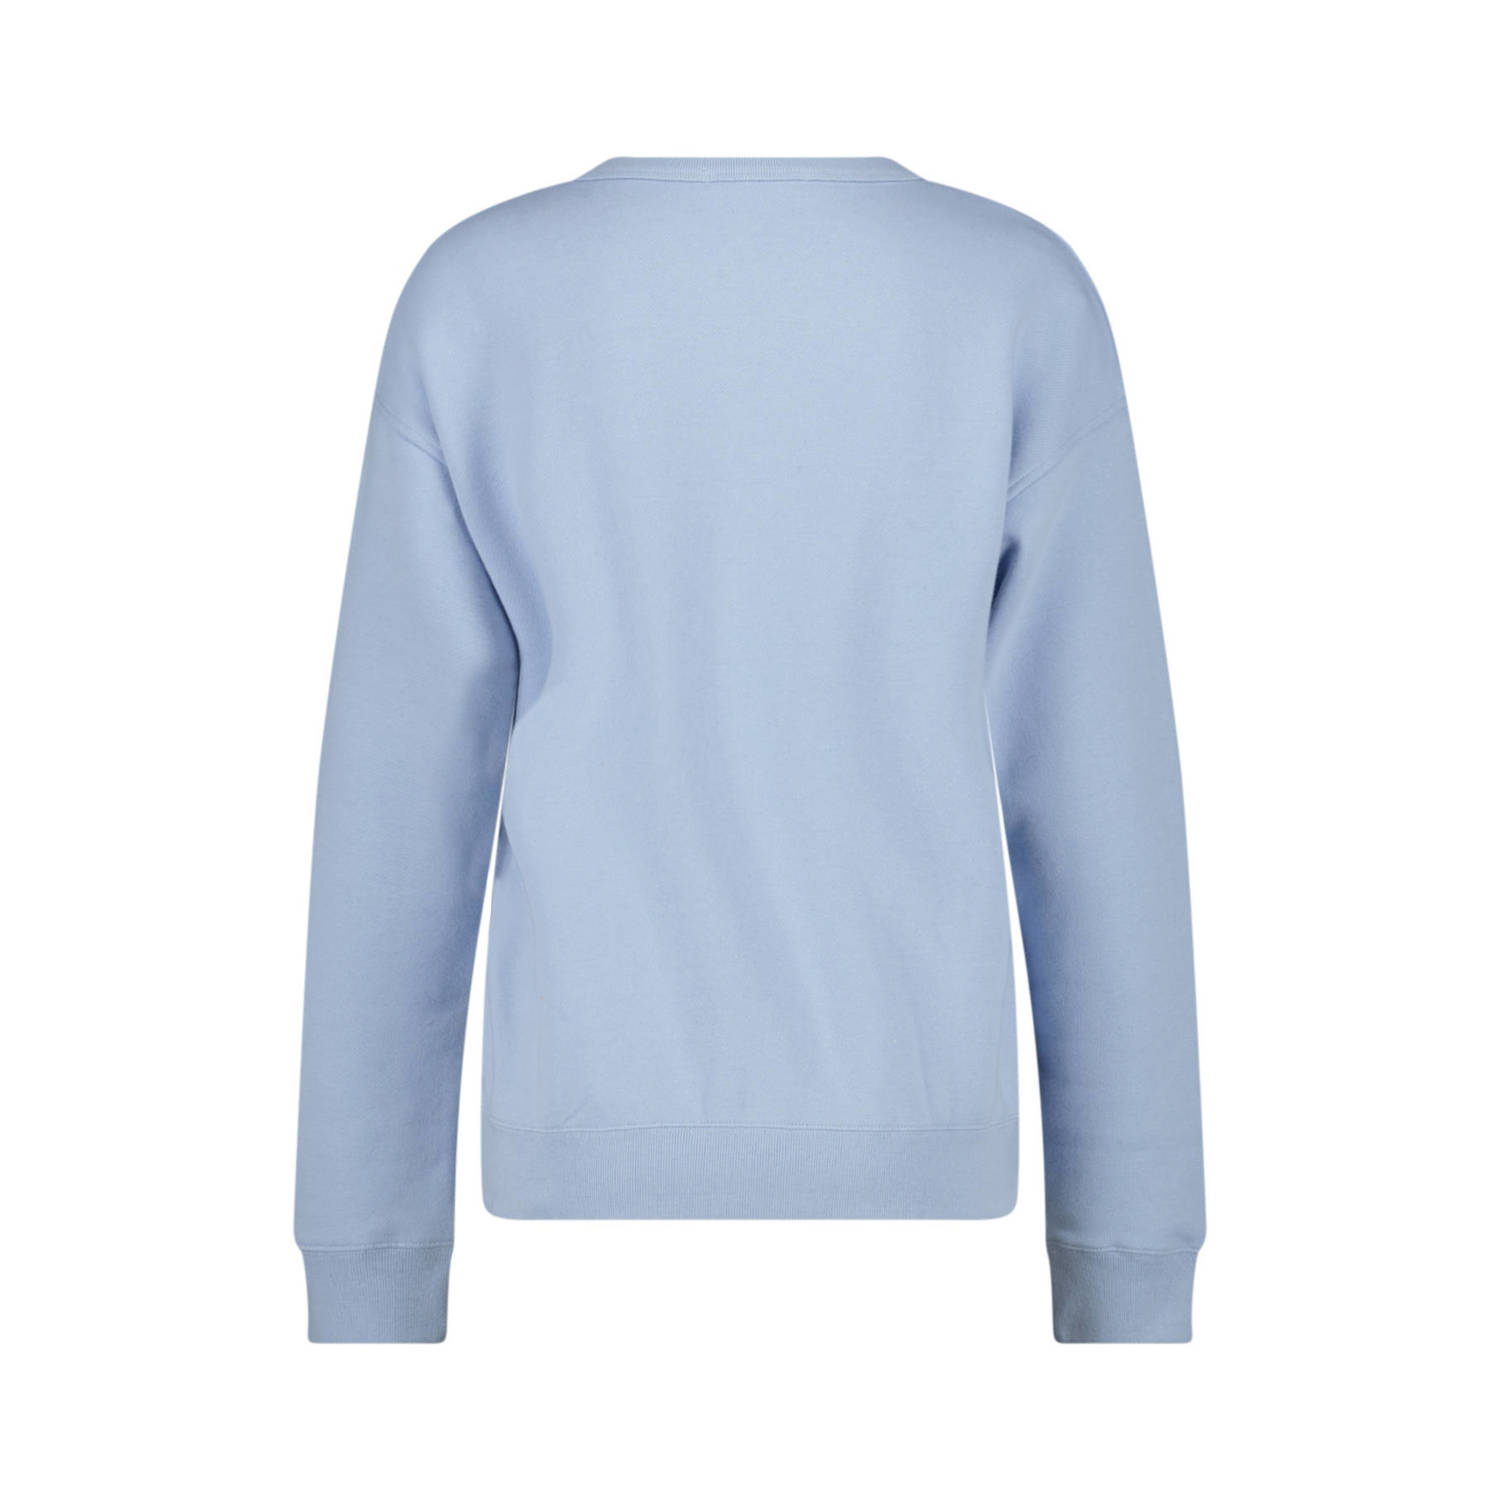 America Today sweater Soel met printopdruk lichtblauw